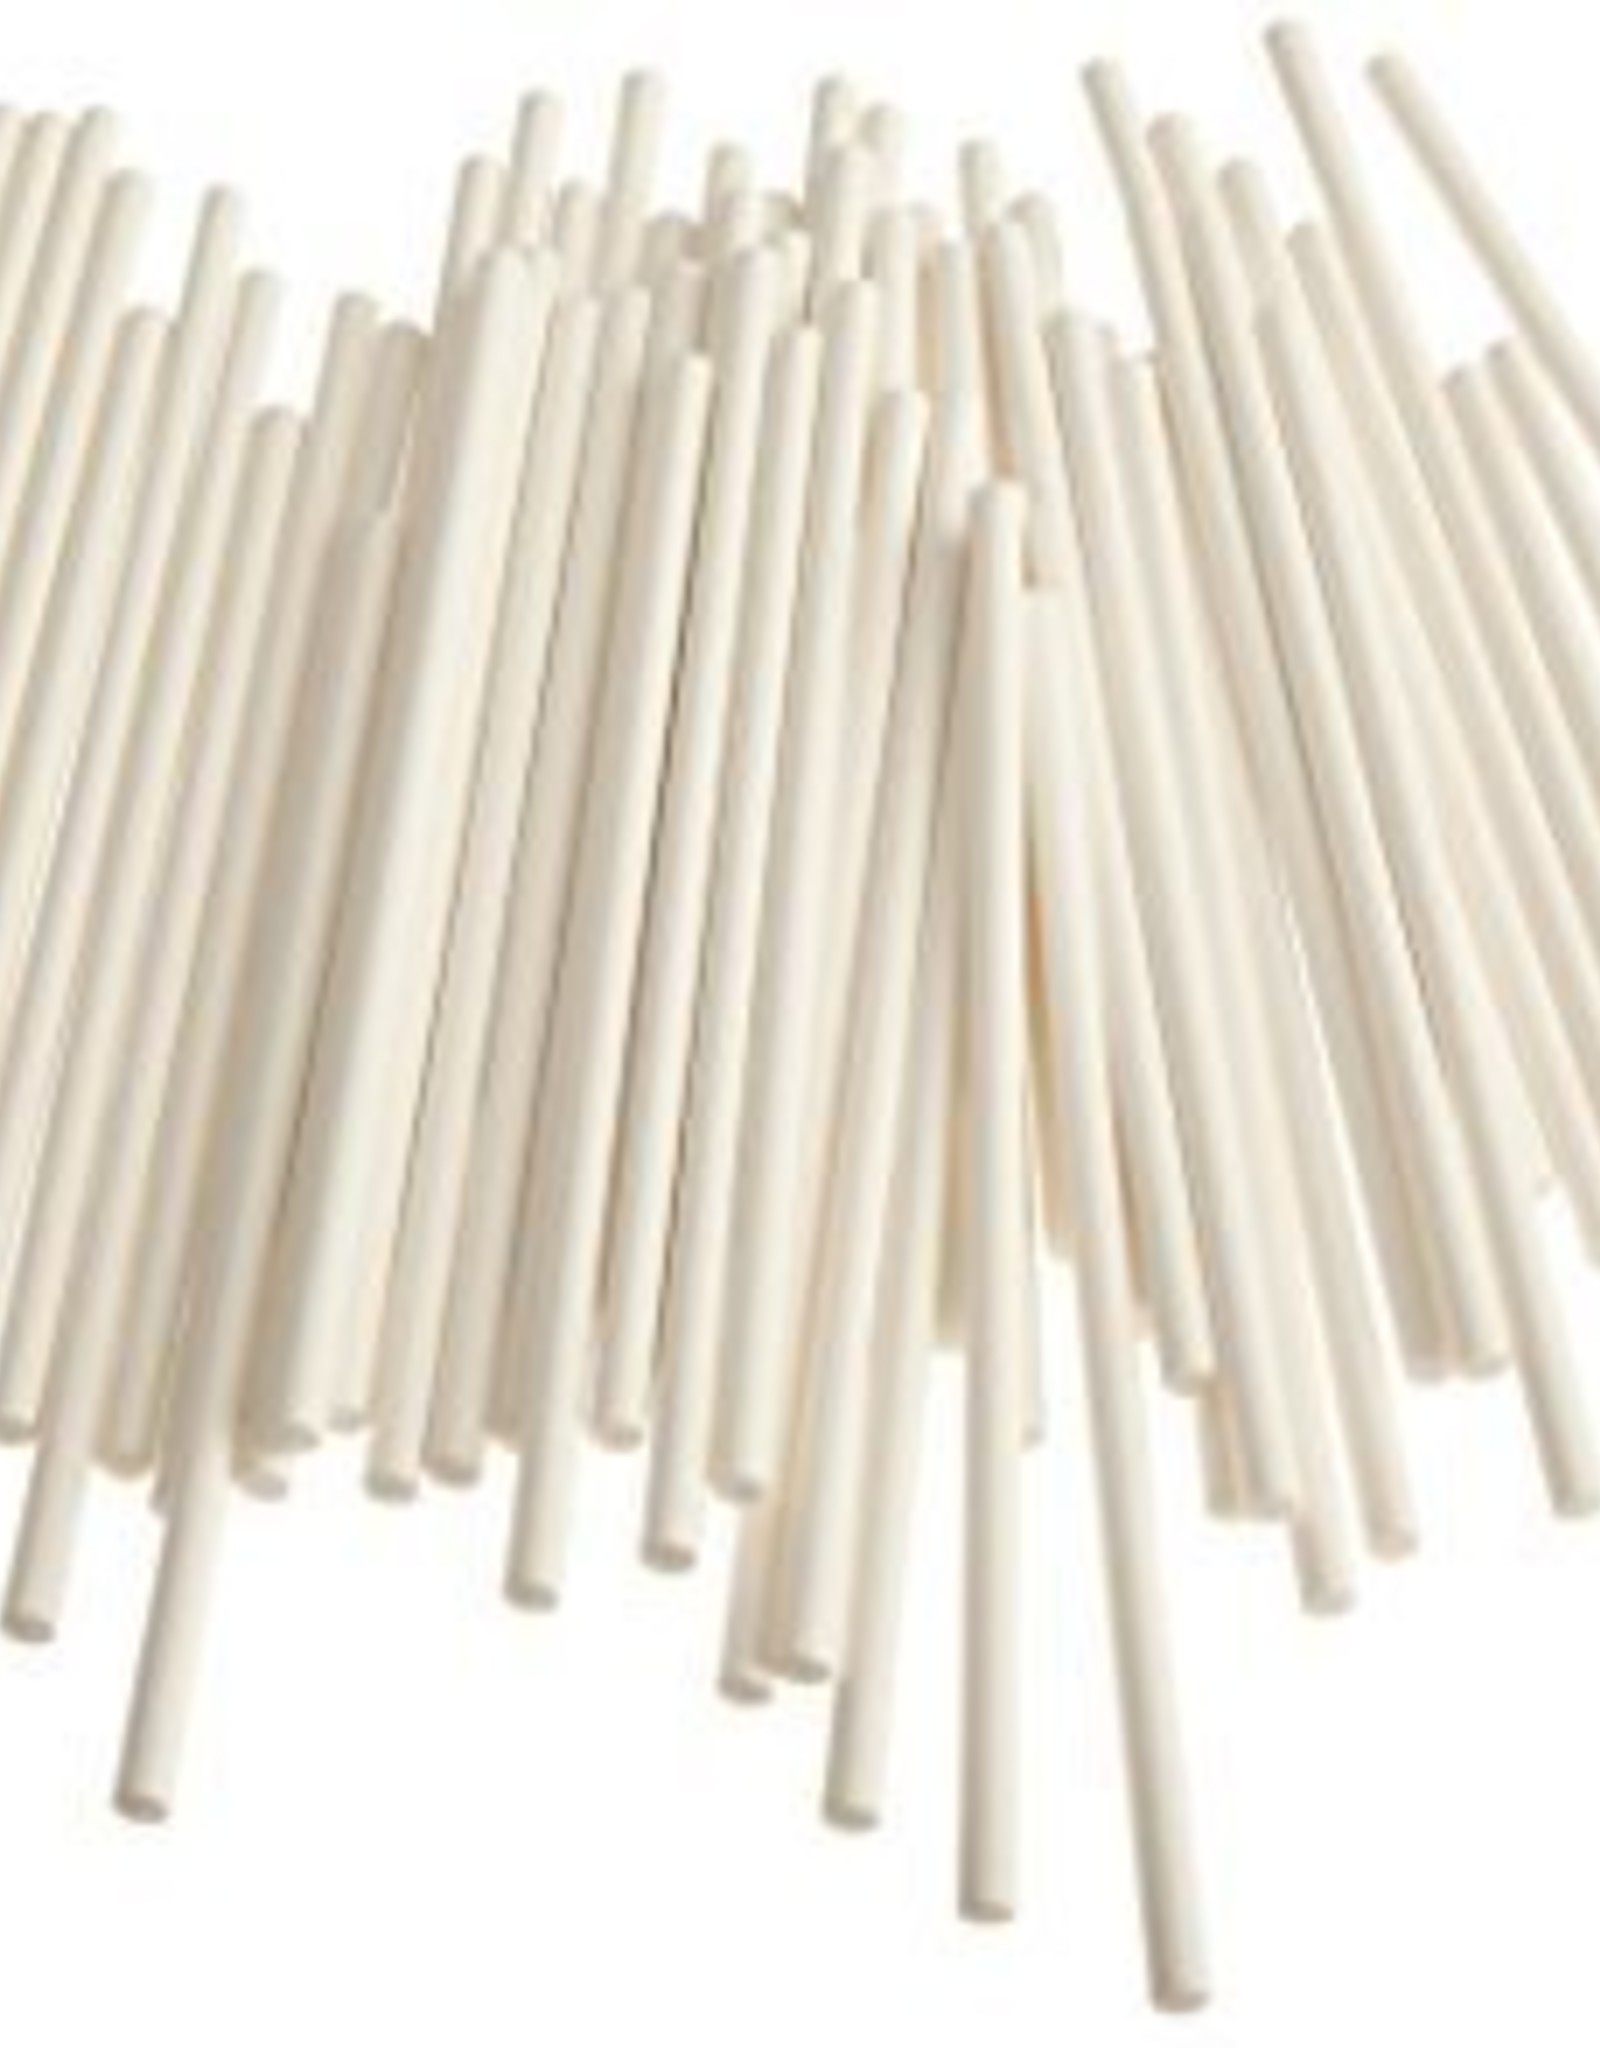 Sucker Sticks (6 inch)25 per pkg